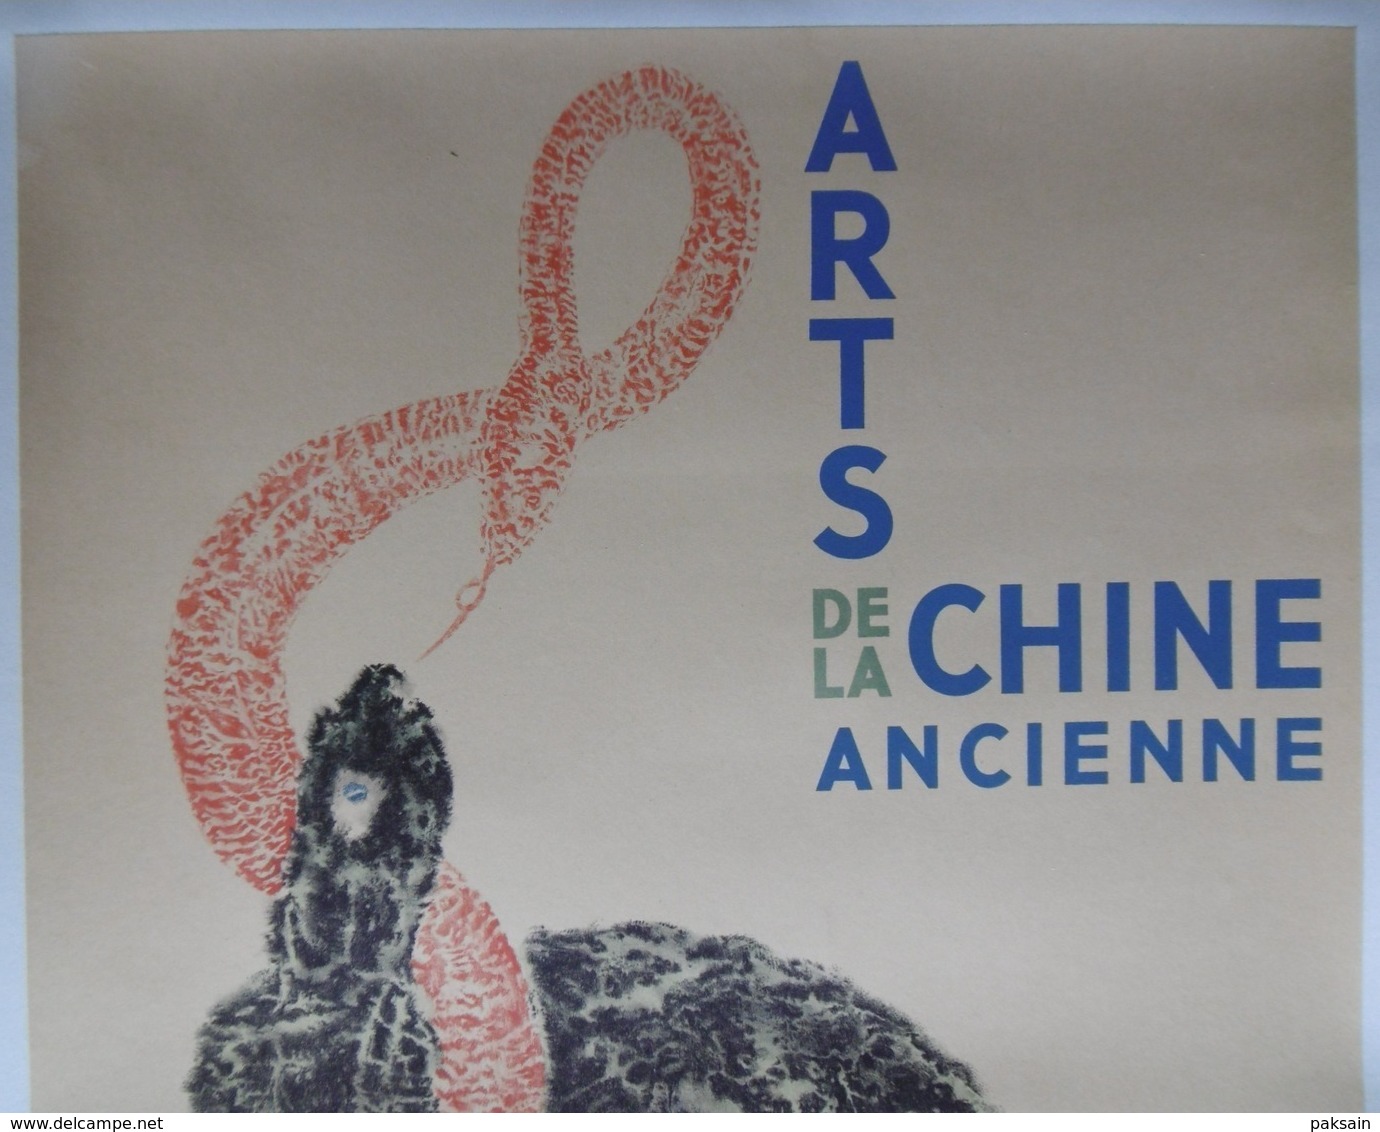 Arts De La Chine Ancienne Affiche Originale 1937 Paris A L'Orangerie Des Tuileries China Chinese Poster - Affiches